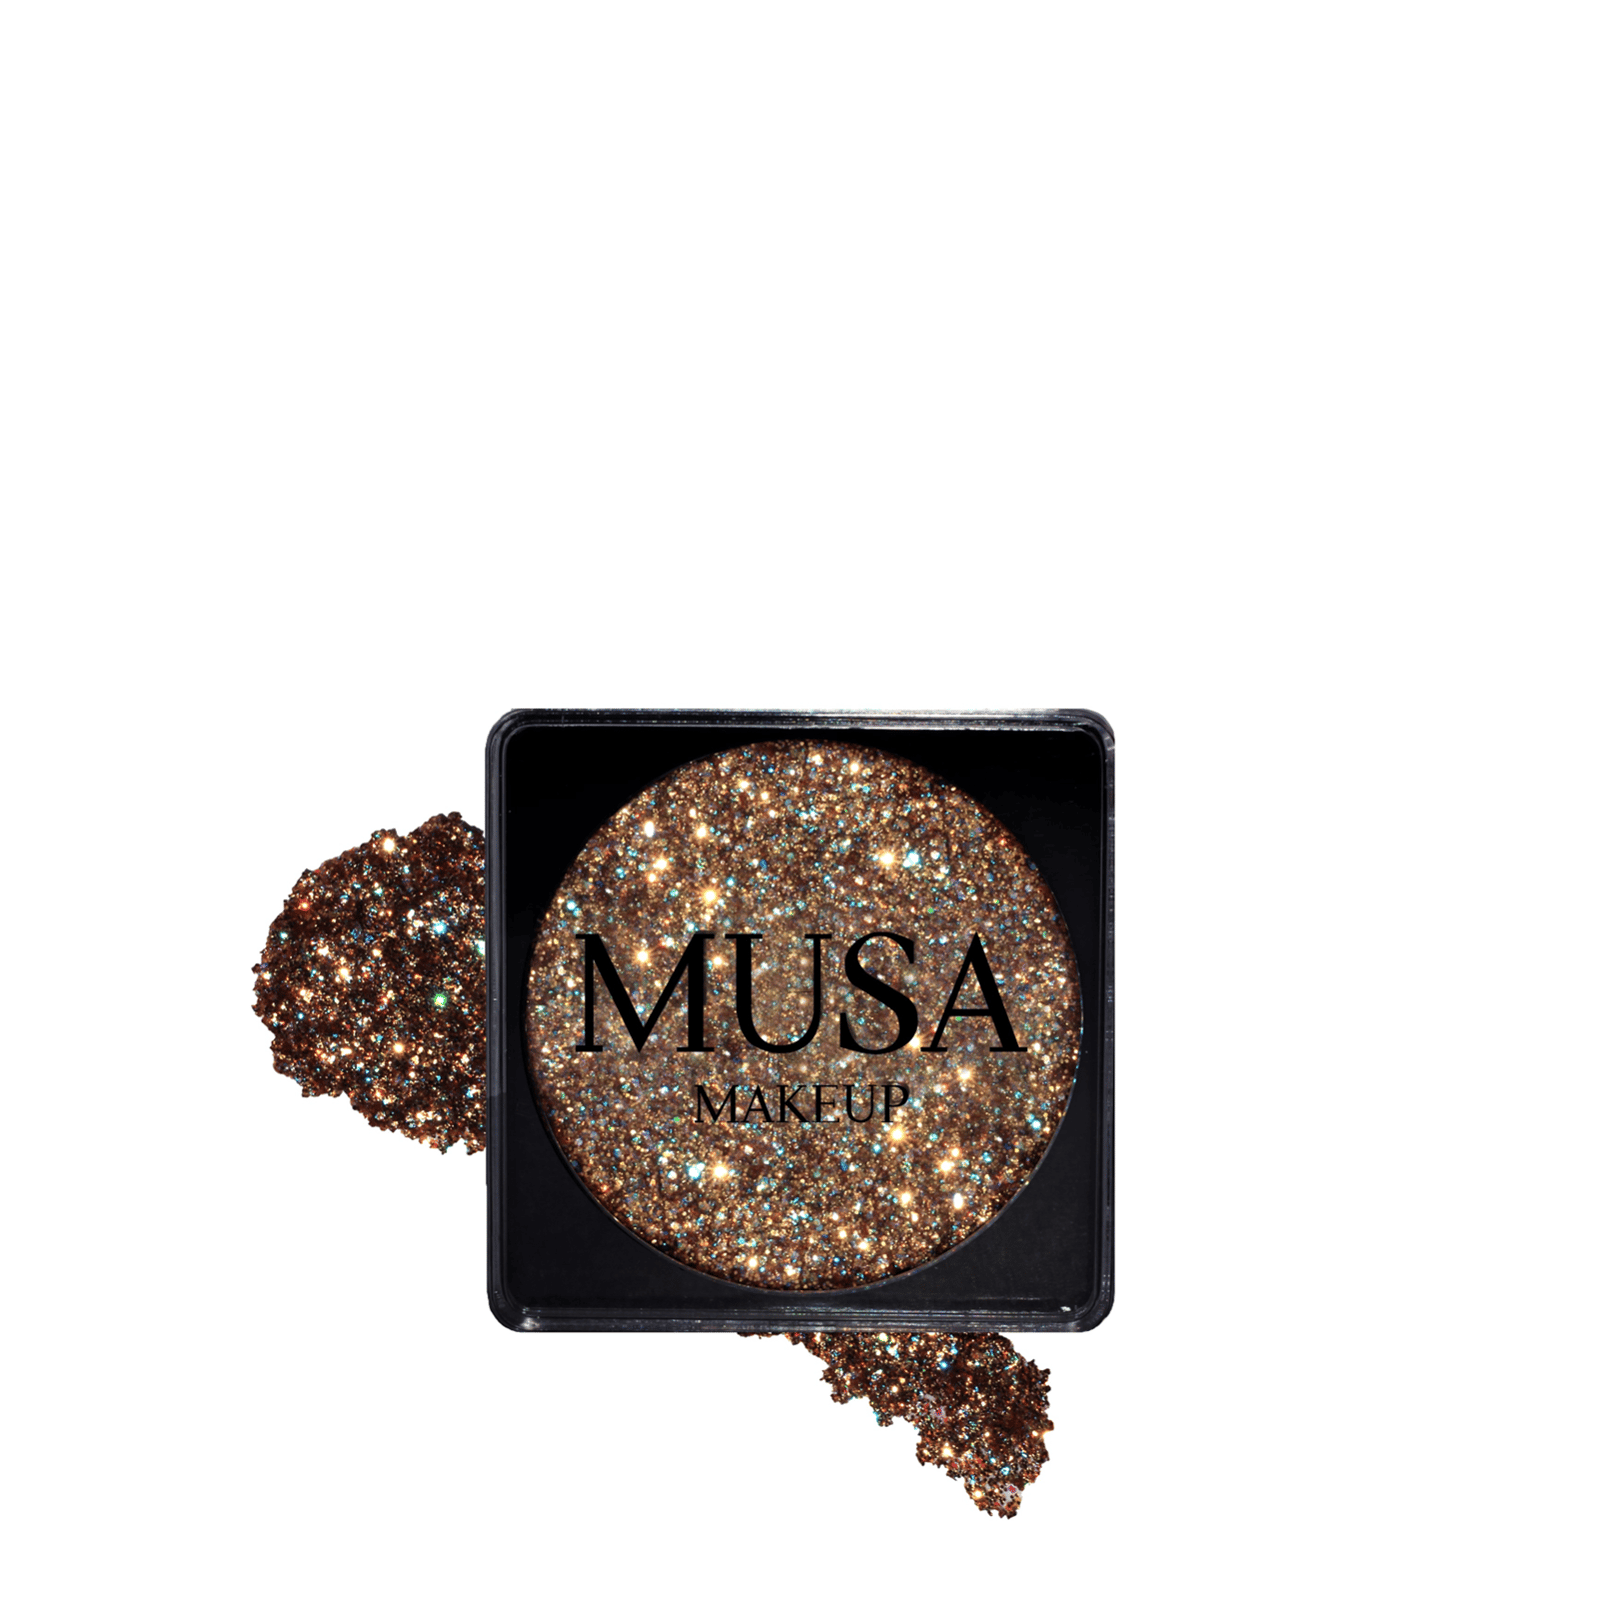 MUSA Makeup Creamy Glitter Goddess 4g (0.14 oz)